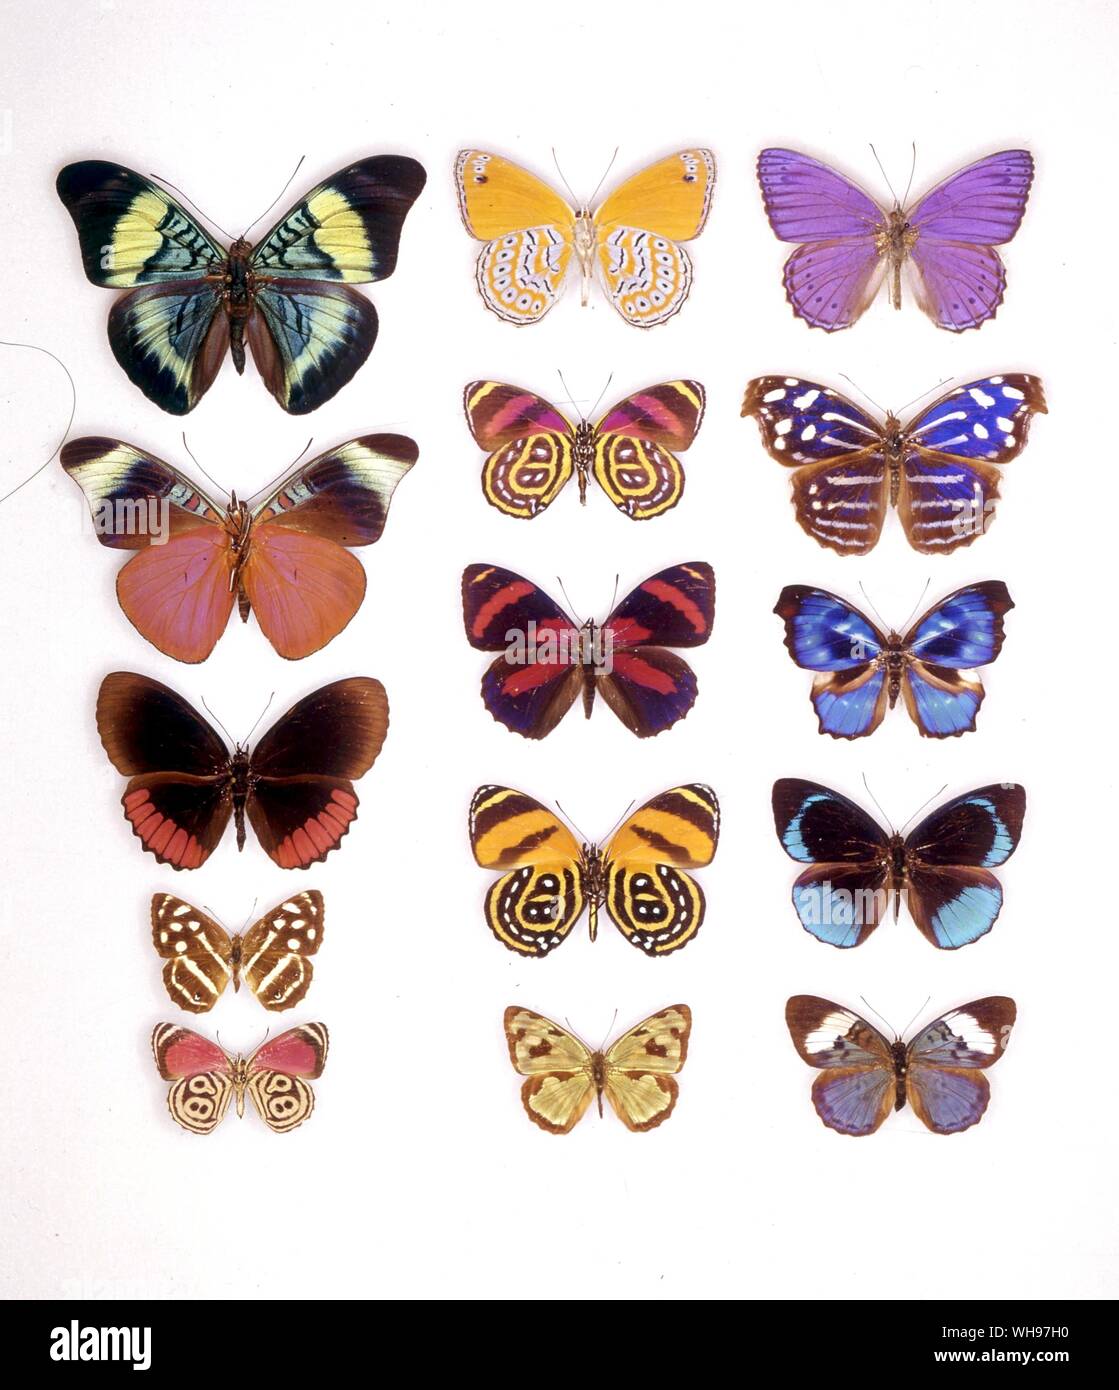 Papillons papillons/- (de gauche à droite) panacée prola, Asterope rosa (le dessous des ailes), Asterope rosa, panacée prola (le dessous des ailes), Callicore astarte (le dessous des ailes), Myscelia cyaniris, Biblis hyperia, Callicore sorona, Myscelia orsis, Dynamine mylitta (femelle), Callicore cynosura (le dessous des ailes), Eunica sophonisba, Diathria aurelia, Dynamine mylitta (mâle), Eunica sophonisba (femelle) Banque D'Images